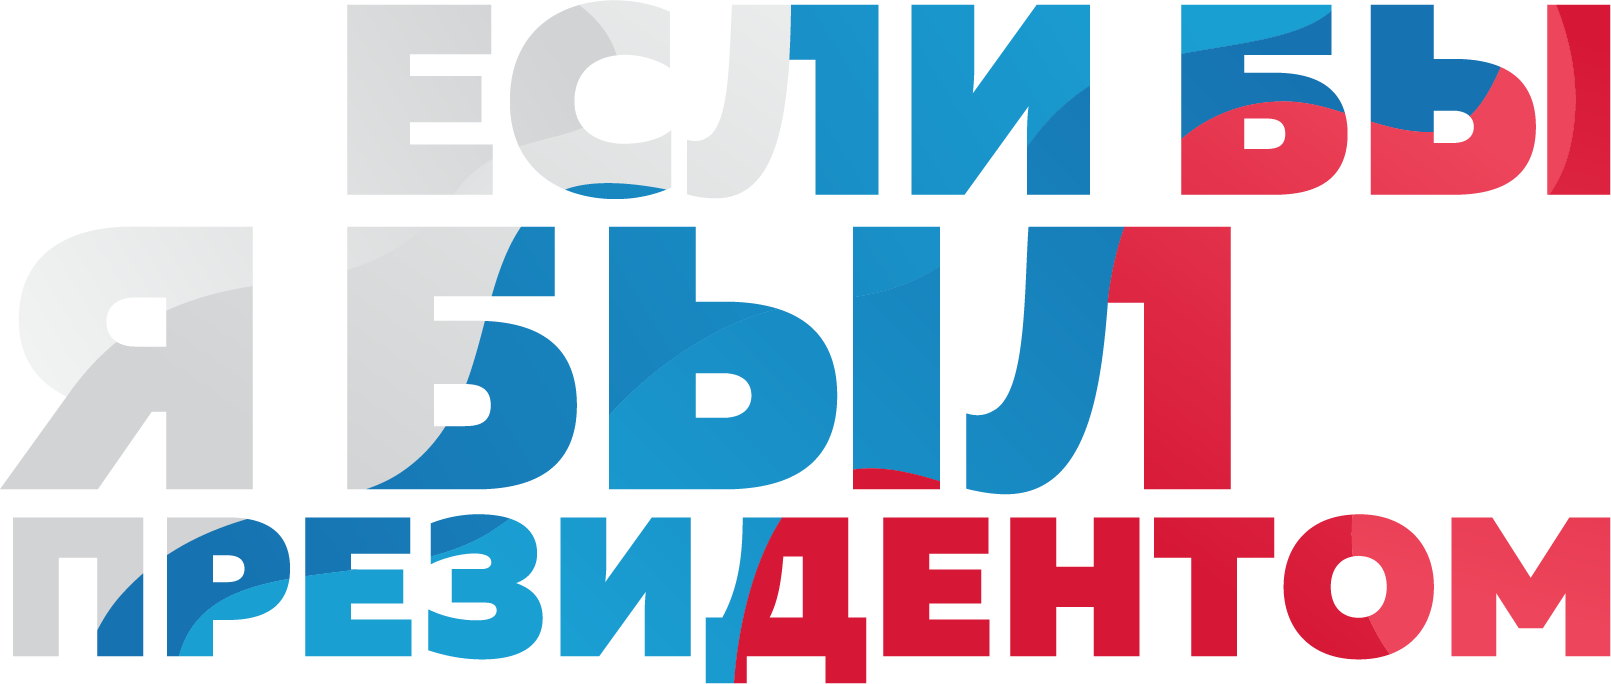 Открыт прием заявок на Всероссийский конкурс молодежных проектов "Если бы я был Президентом"!